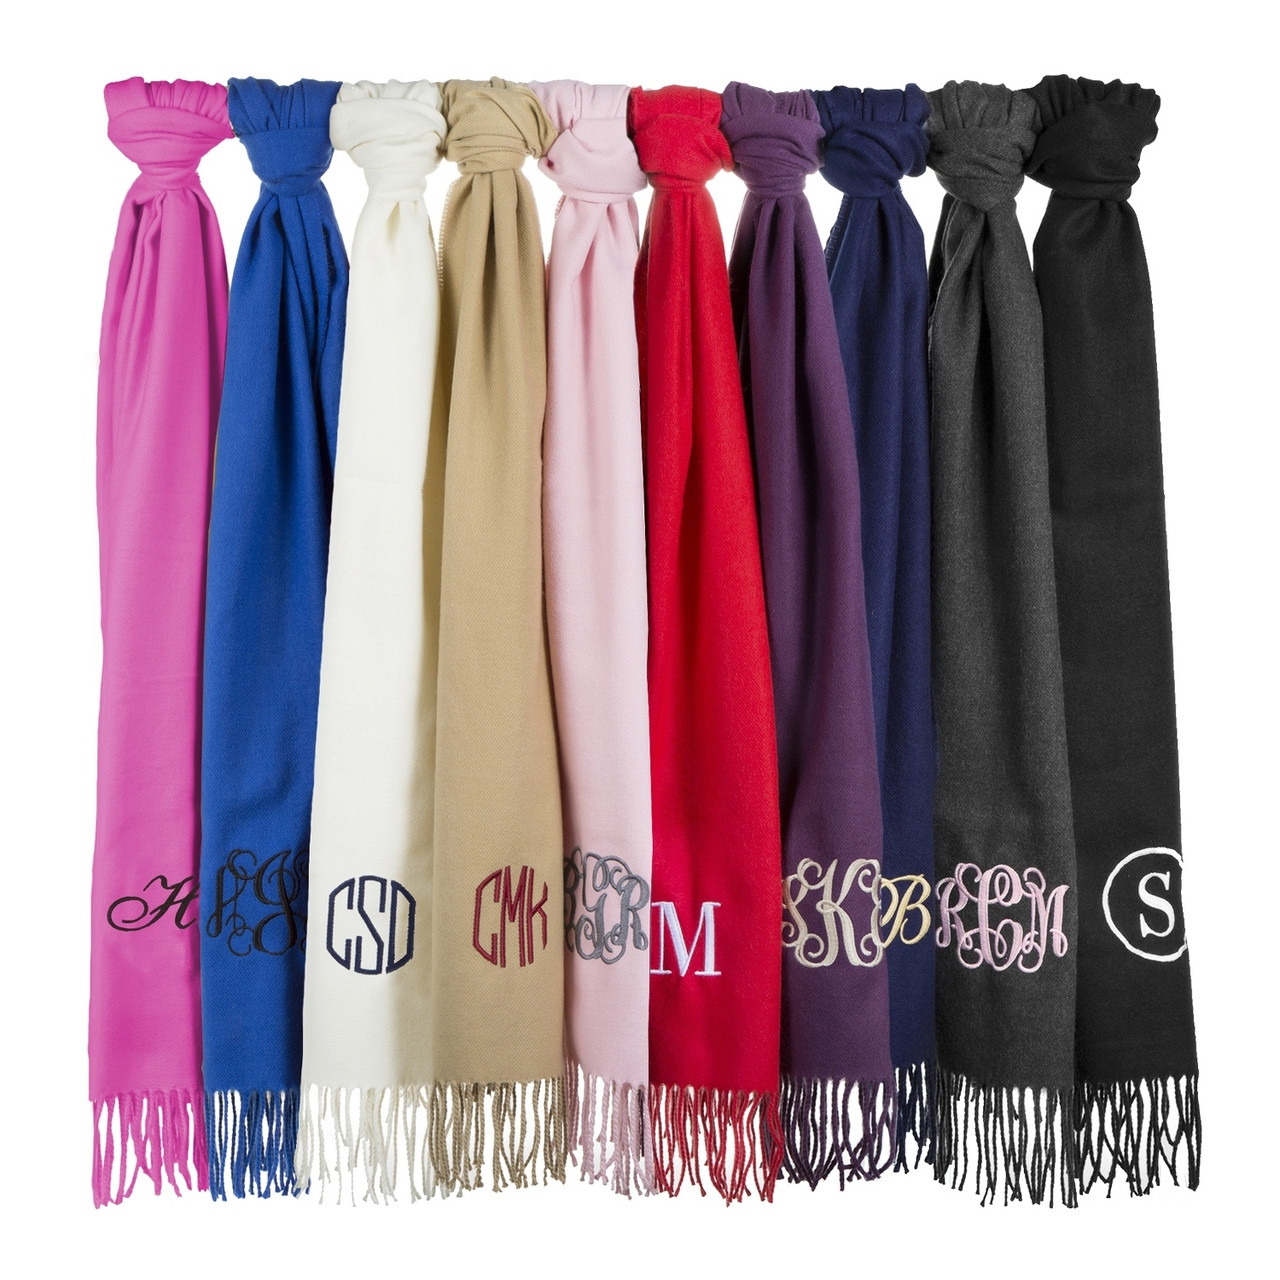 personalized scarves in bulk